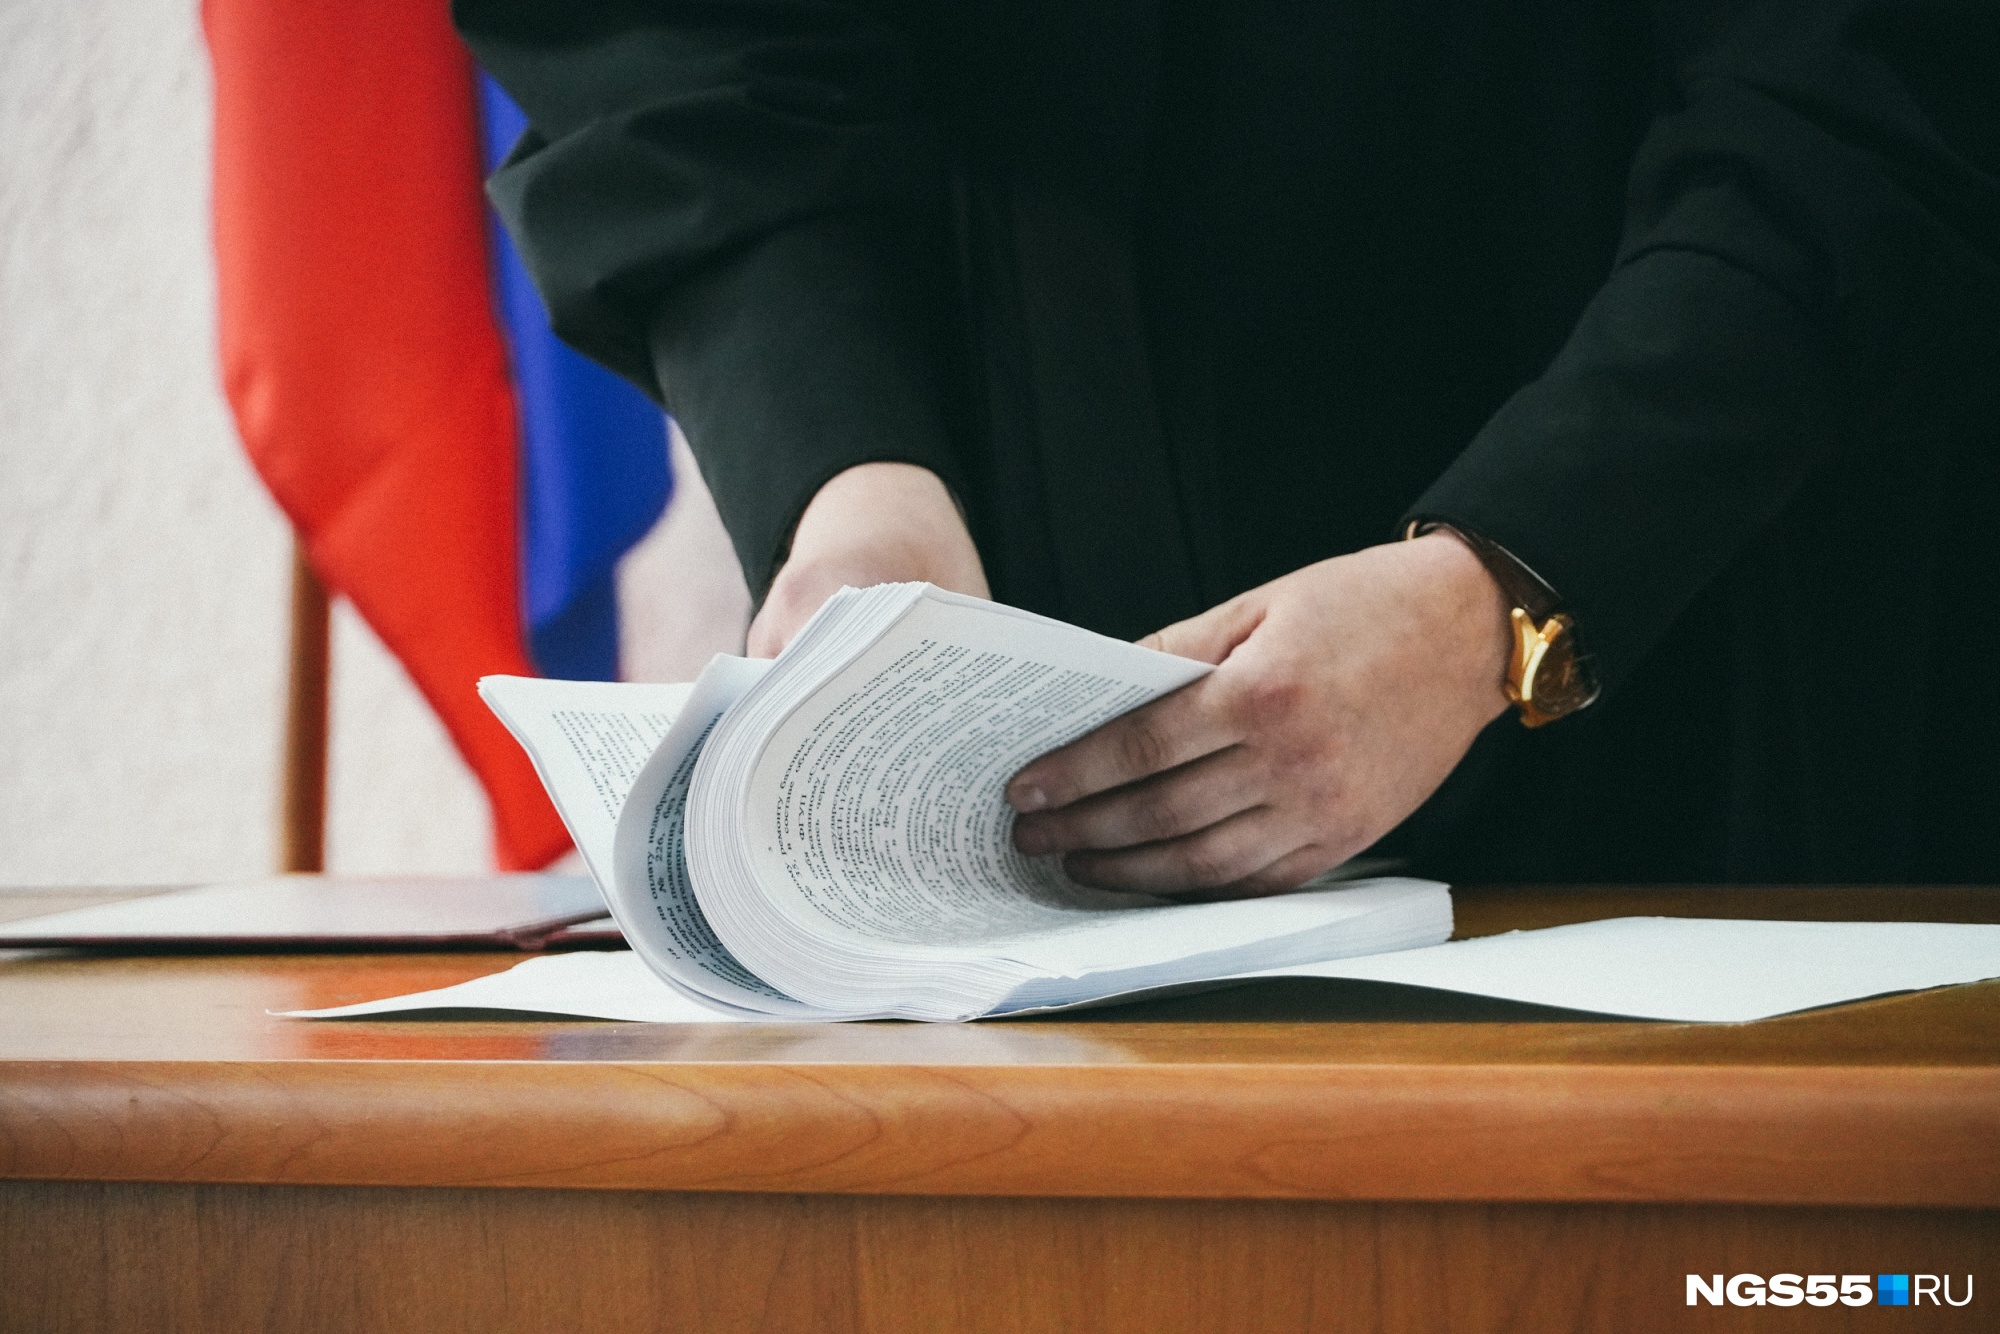 Железнодорожника из Иркутска будут судить за подлог с ущербом на 3 млн рублей